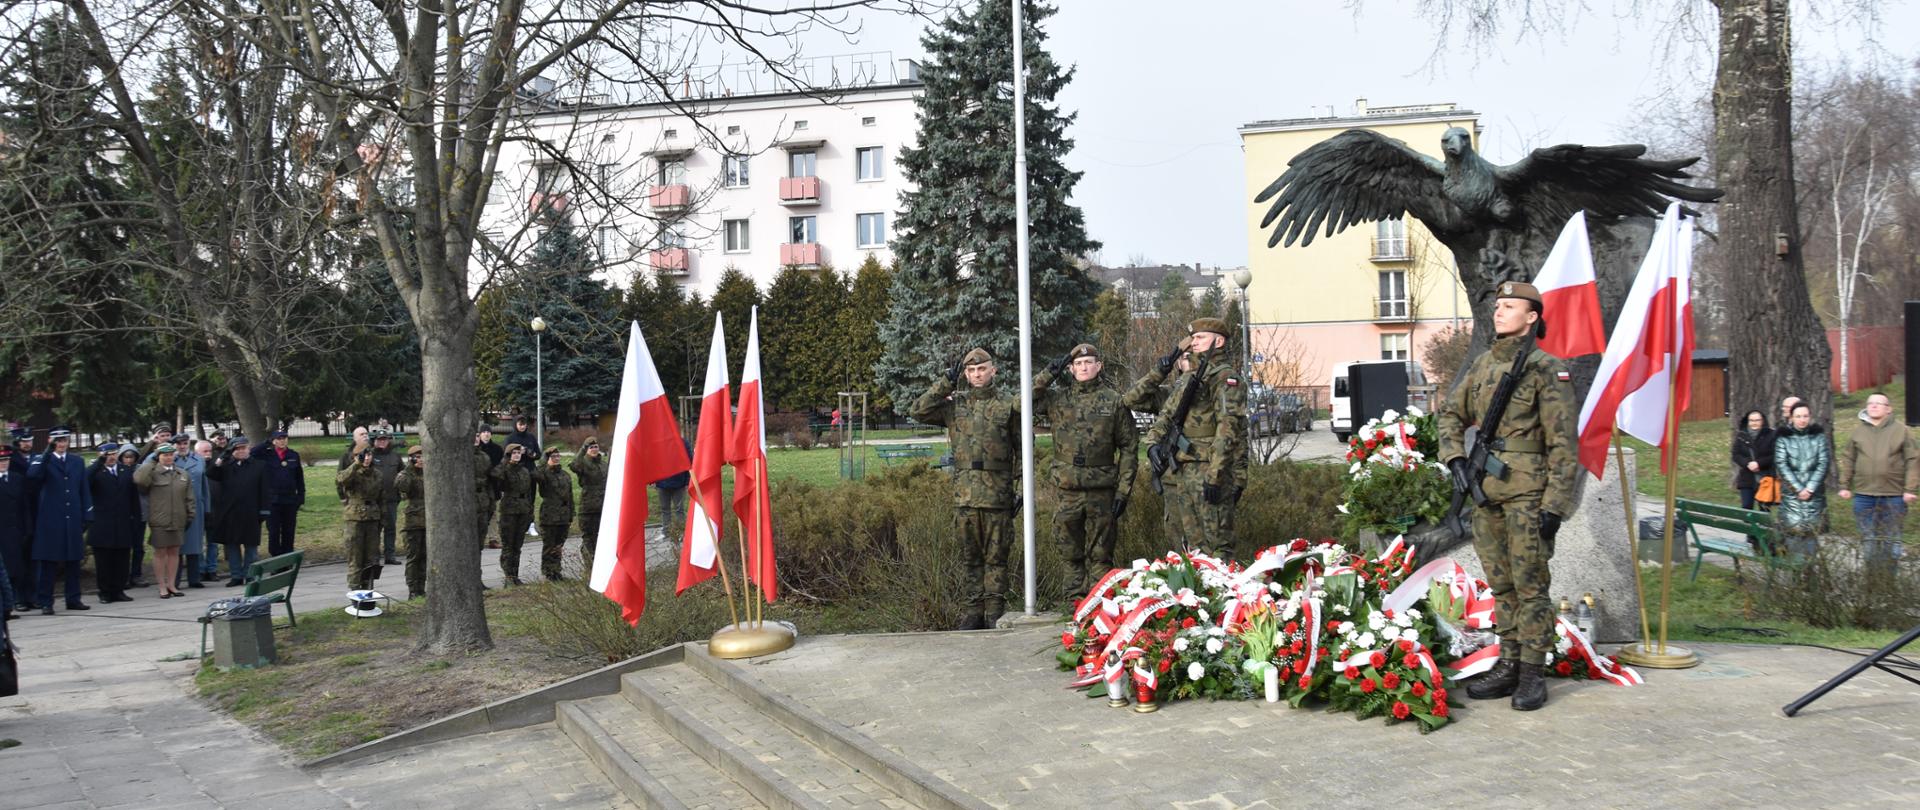 Na zdjęciu grupa żołnierze stojący pod pomnikiem. Na ziemi leżą wiązanki i znicze. 